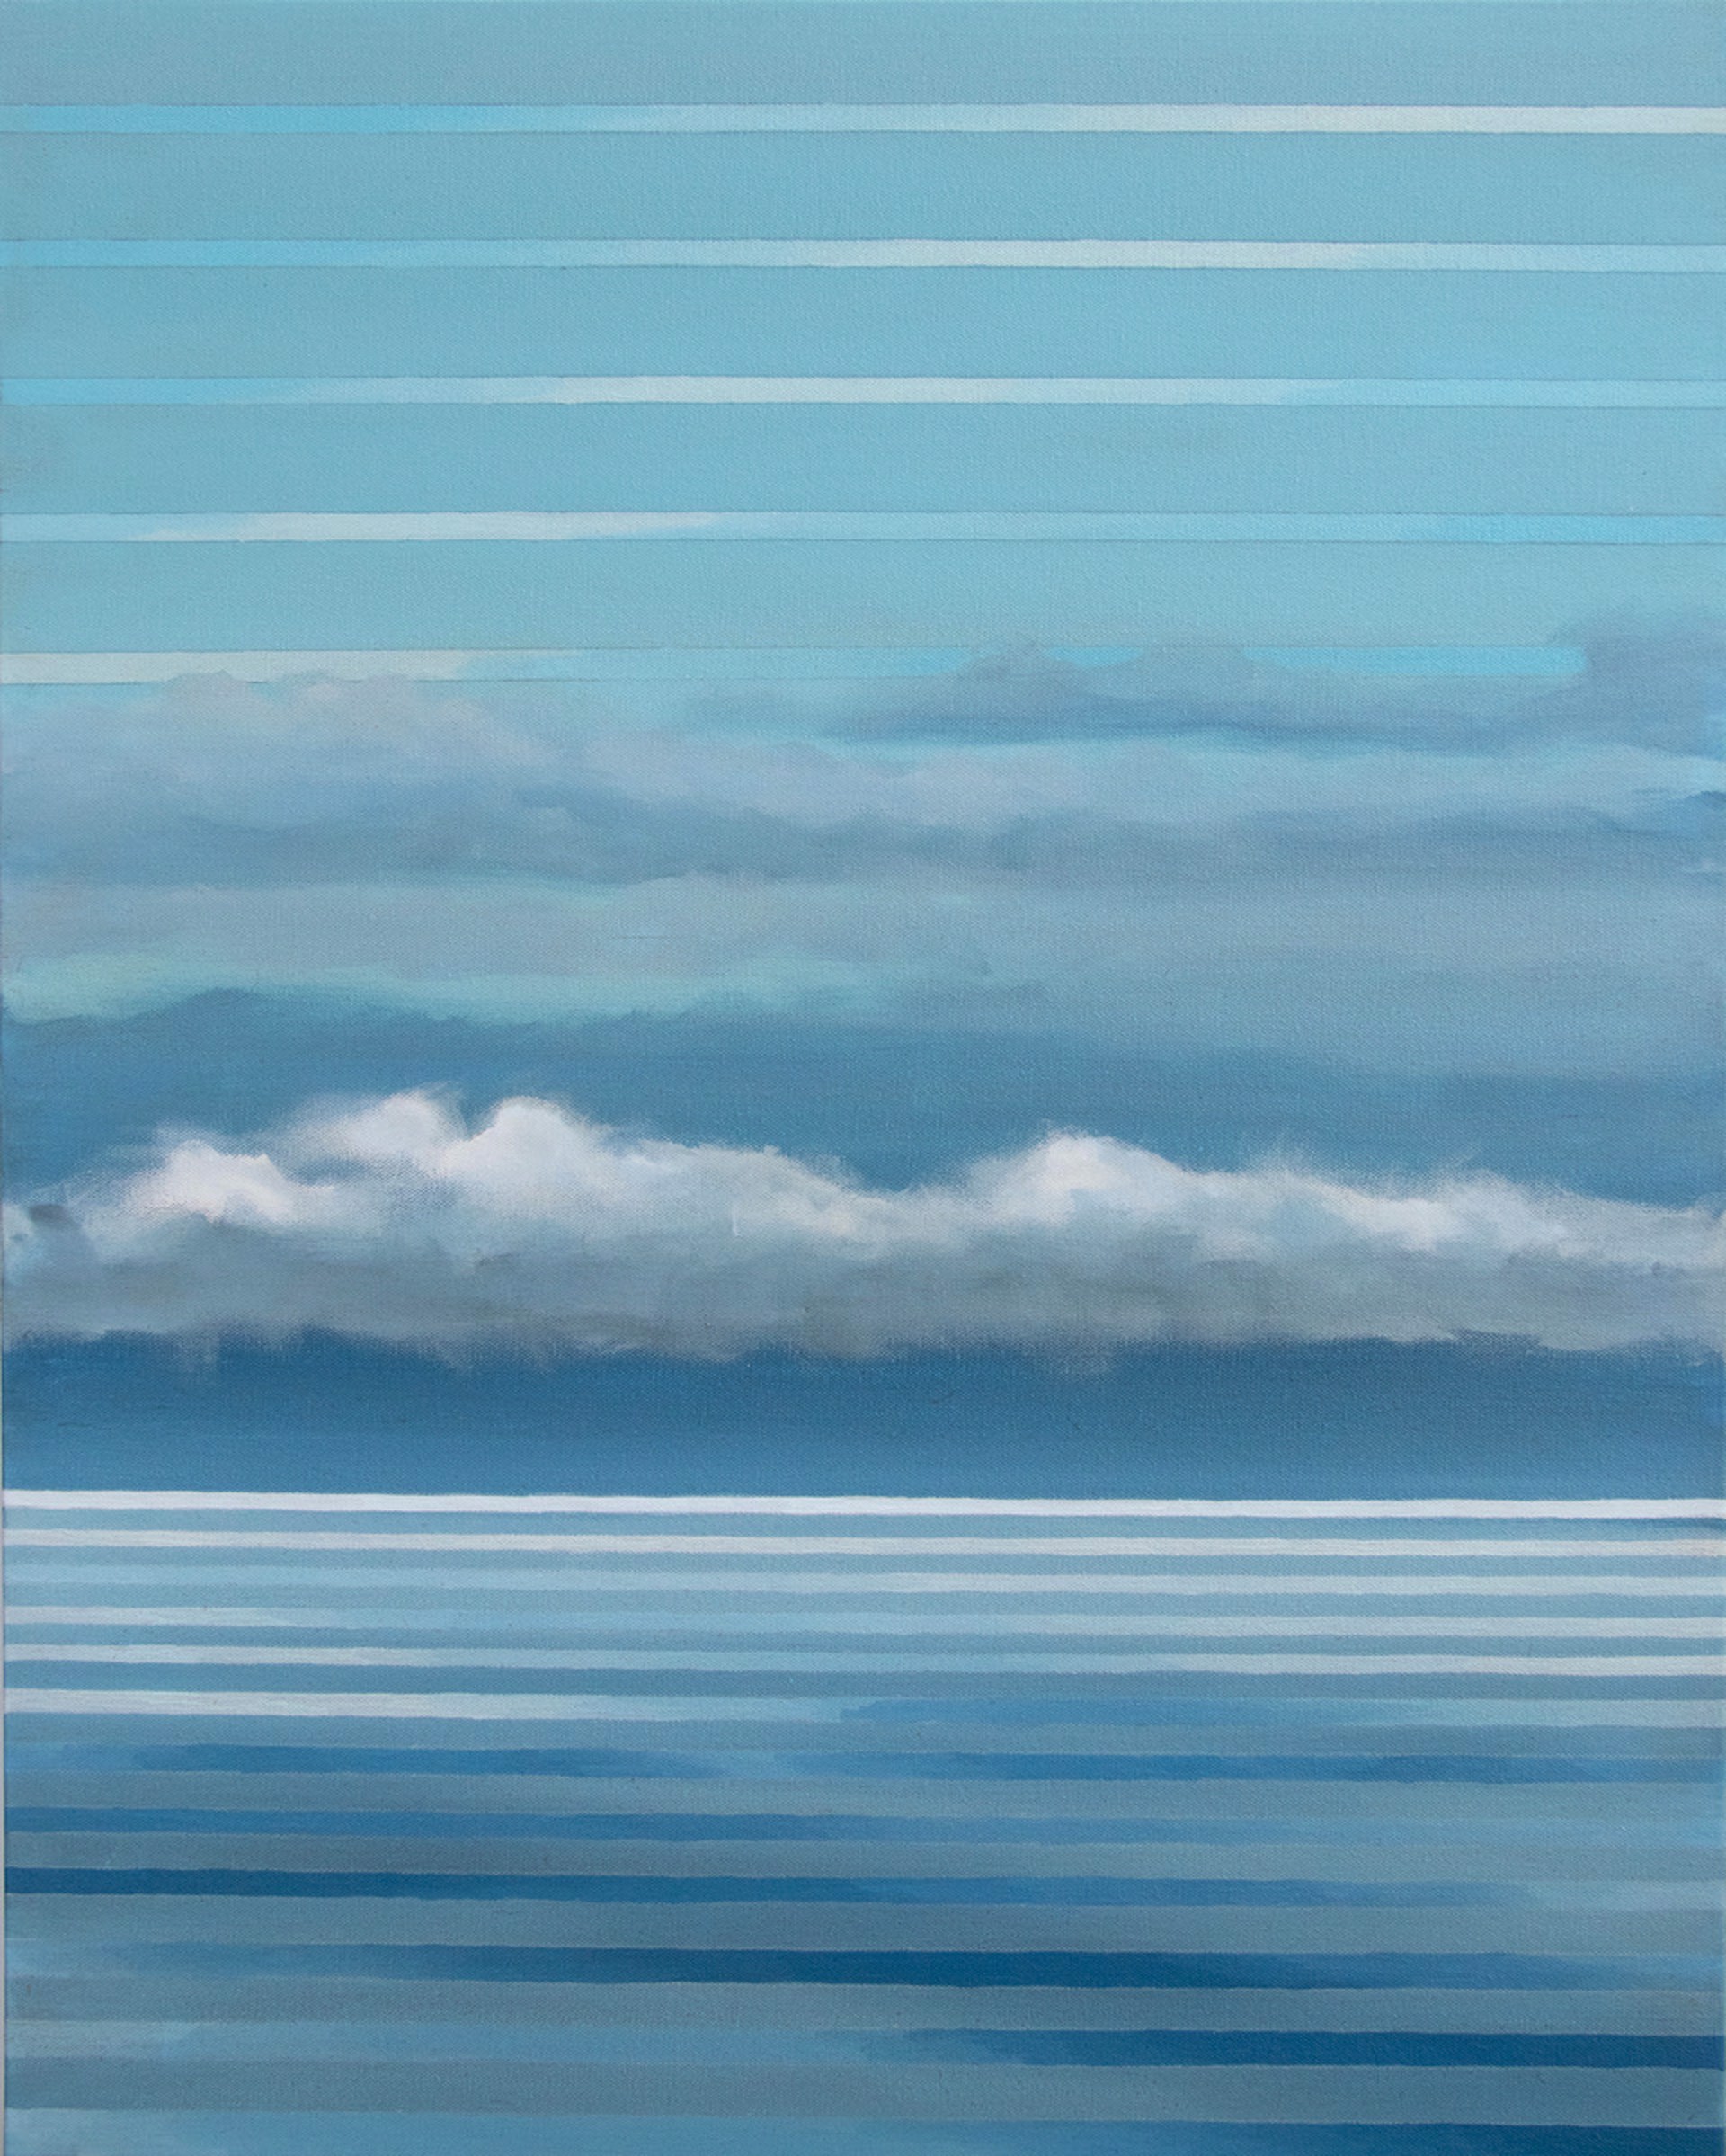 One Cloud by Julika Lackner